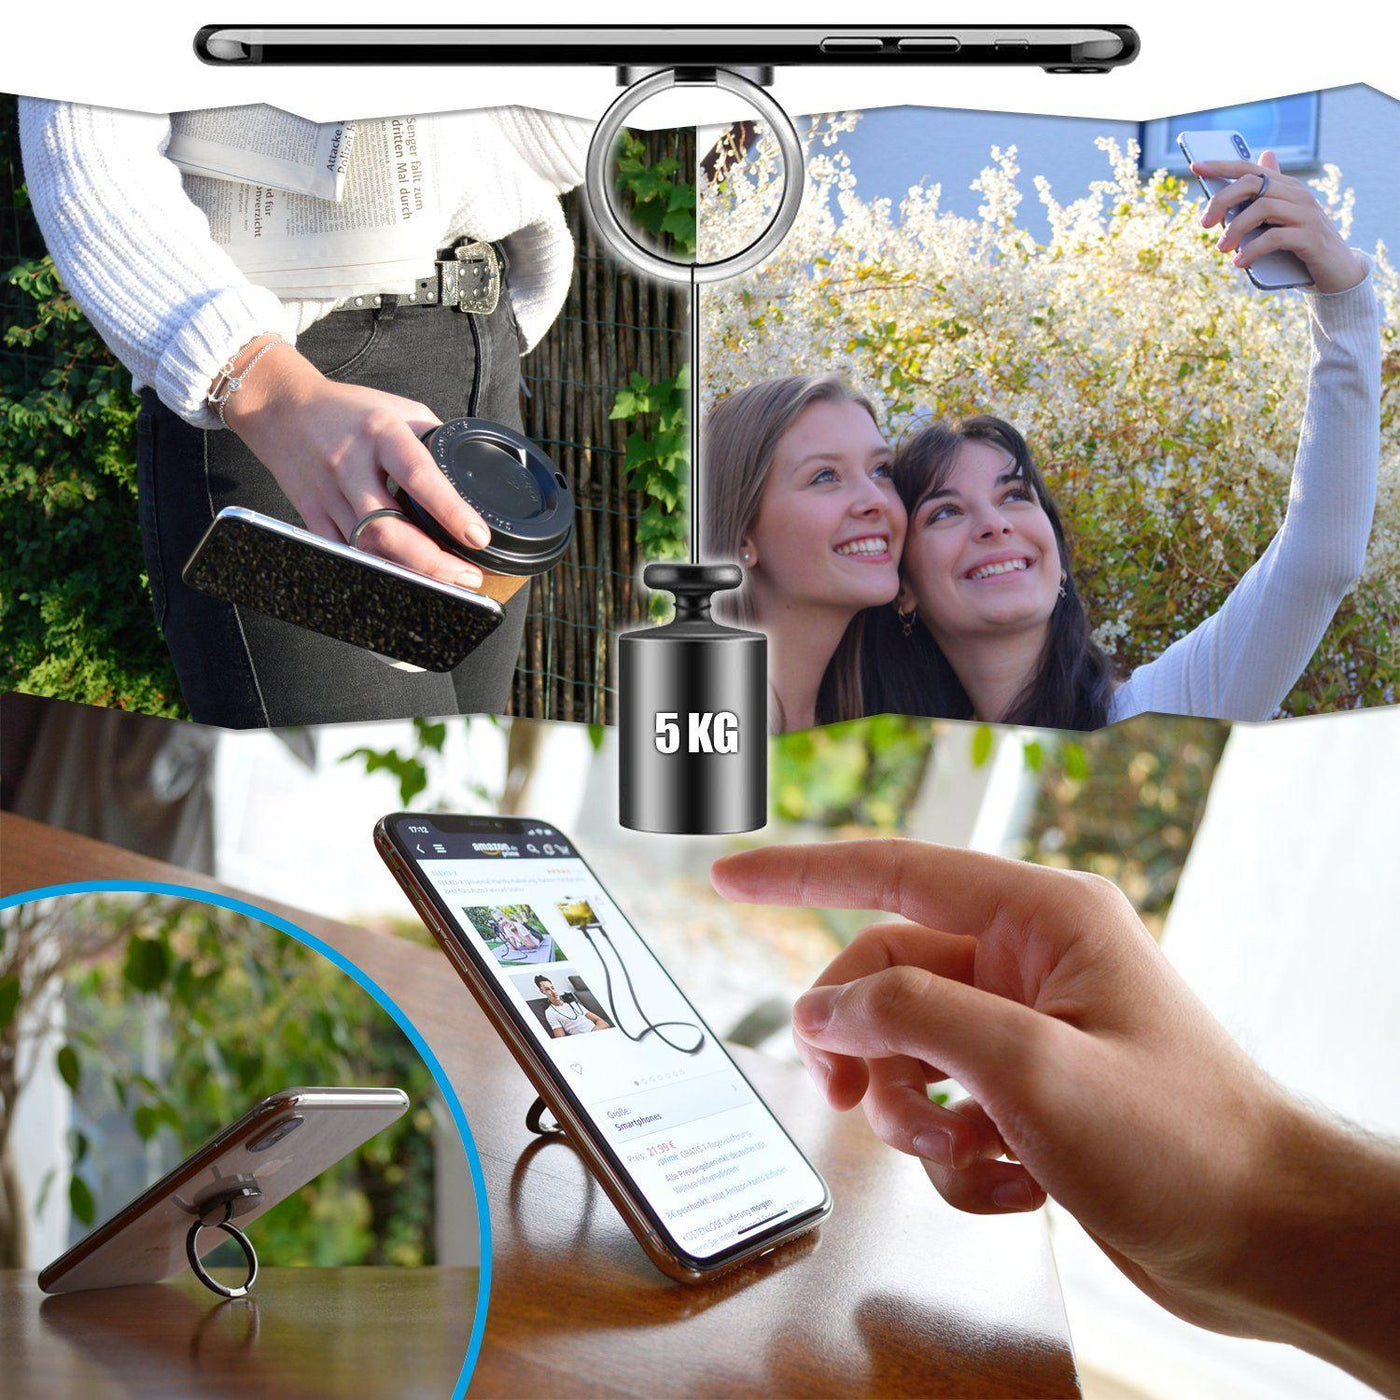 FLEXD-RING Hochwertiger Handy Fingerhalter inkl. 2x Wandhalterung Smartphone Flexd-x 